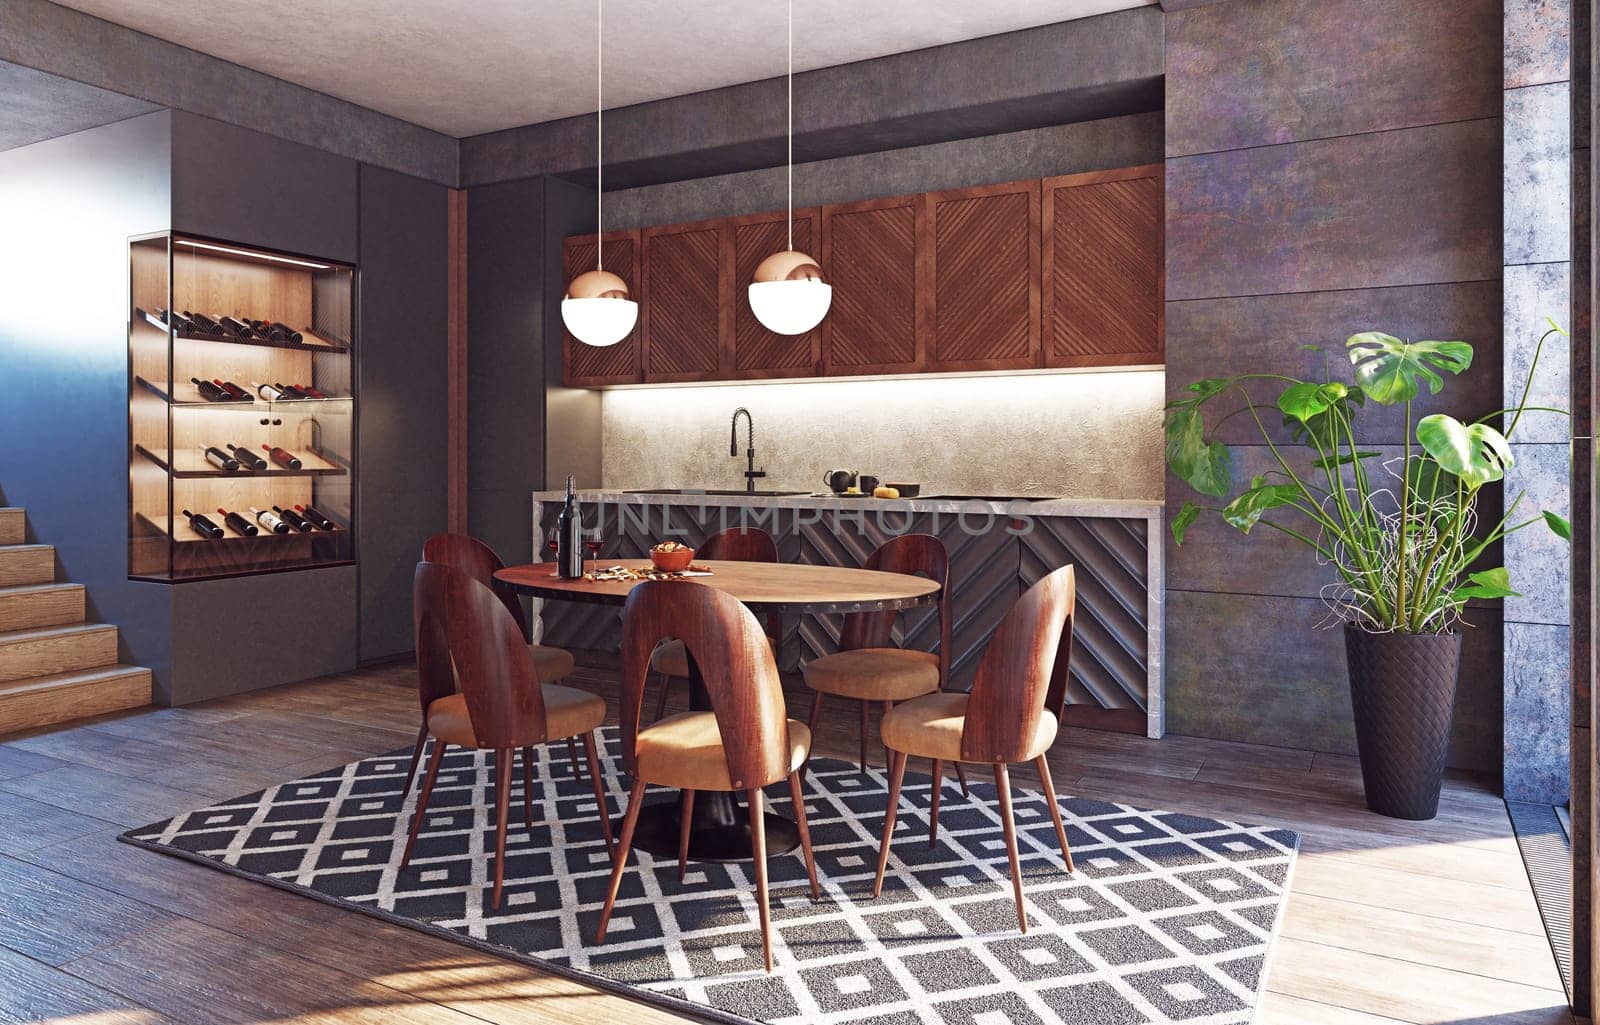 modern kitchen interior design concept. 3d rendering idea.